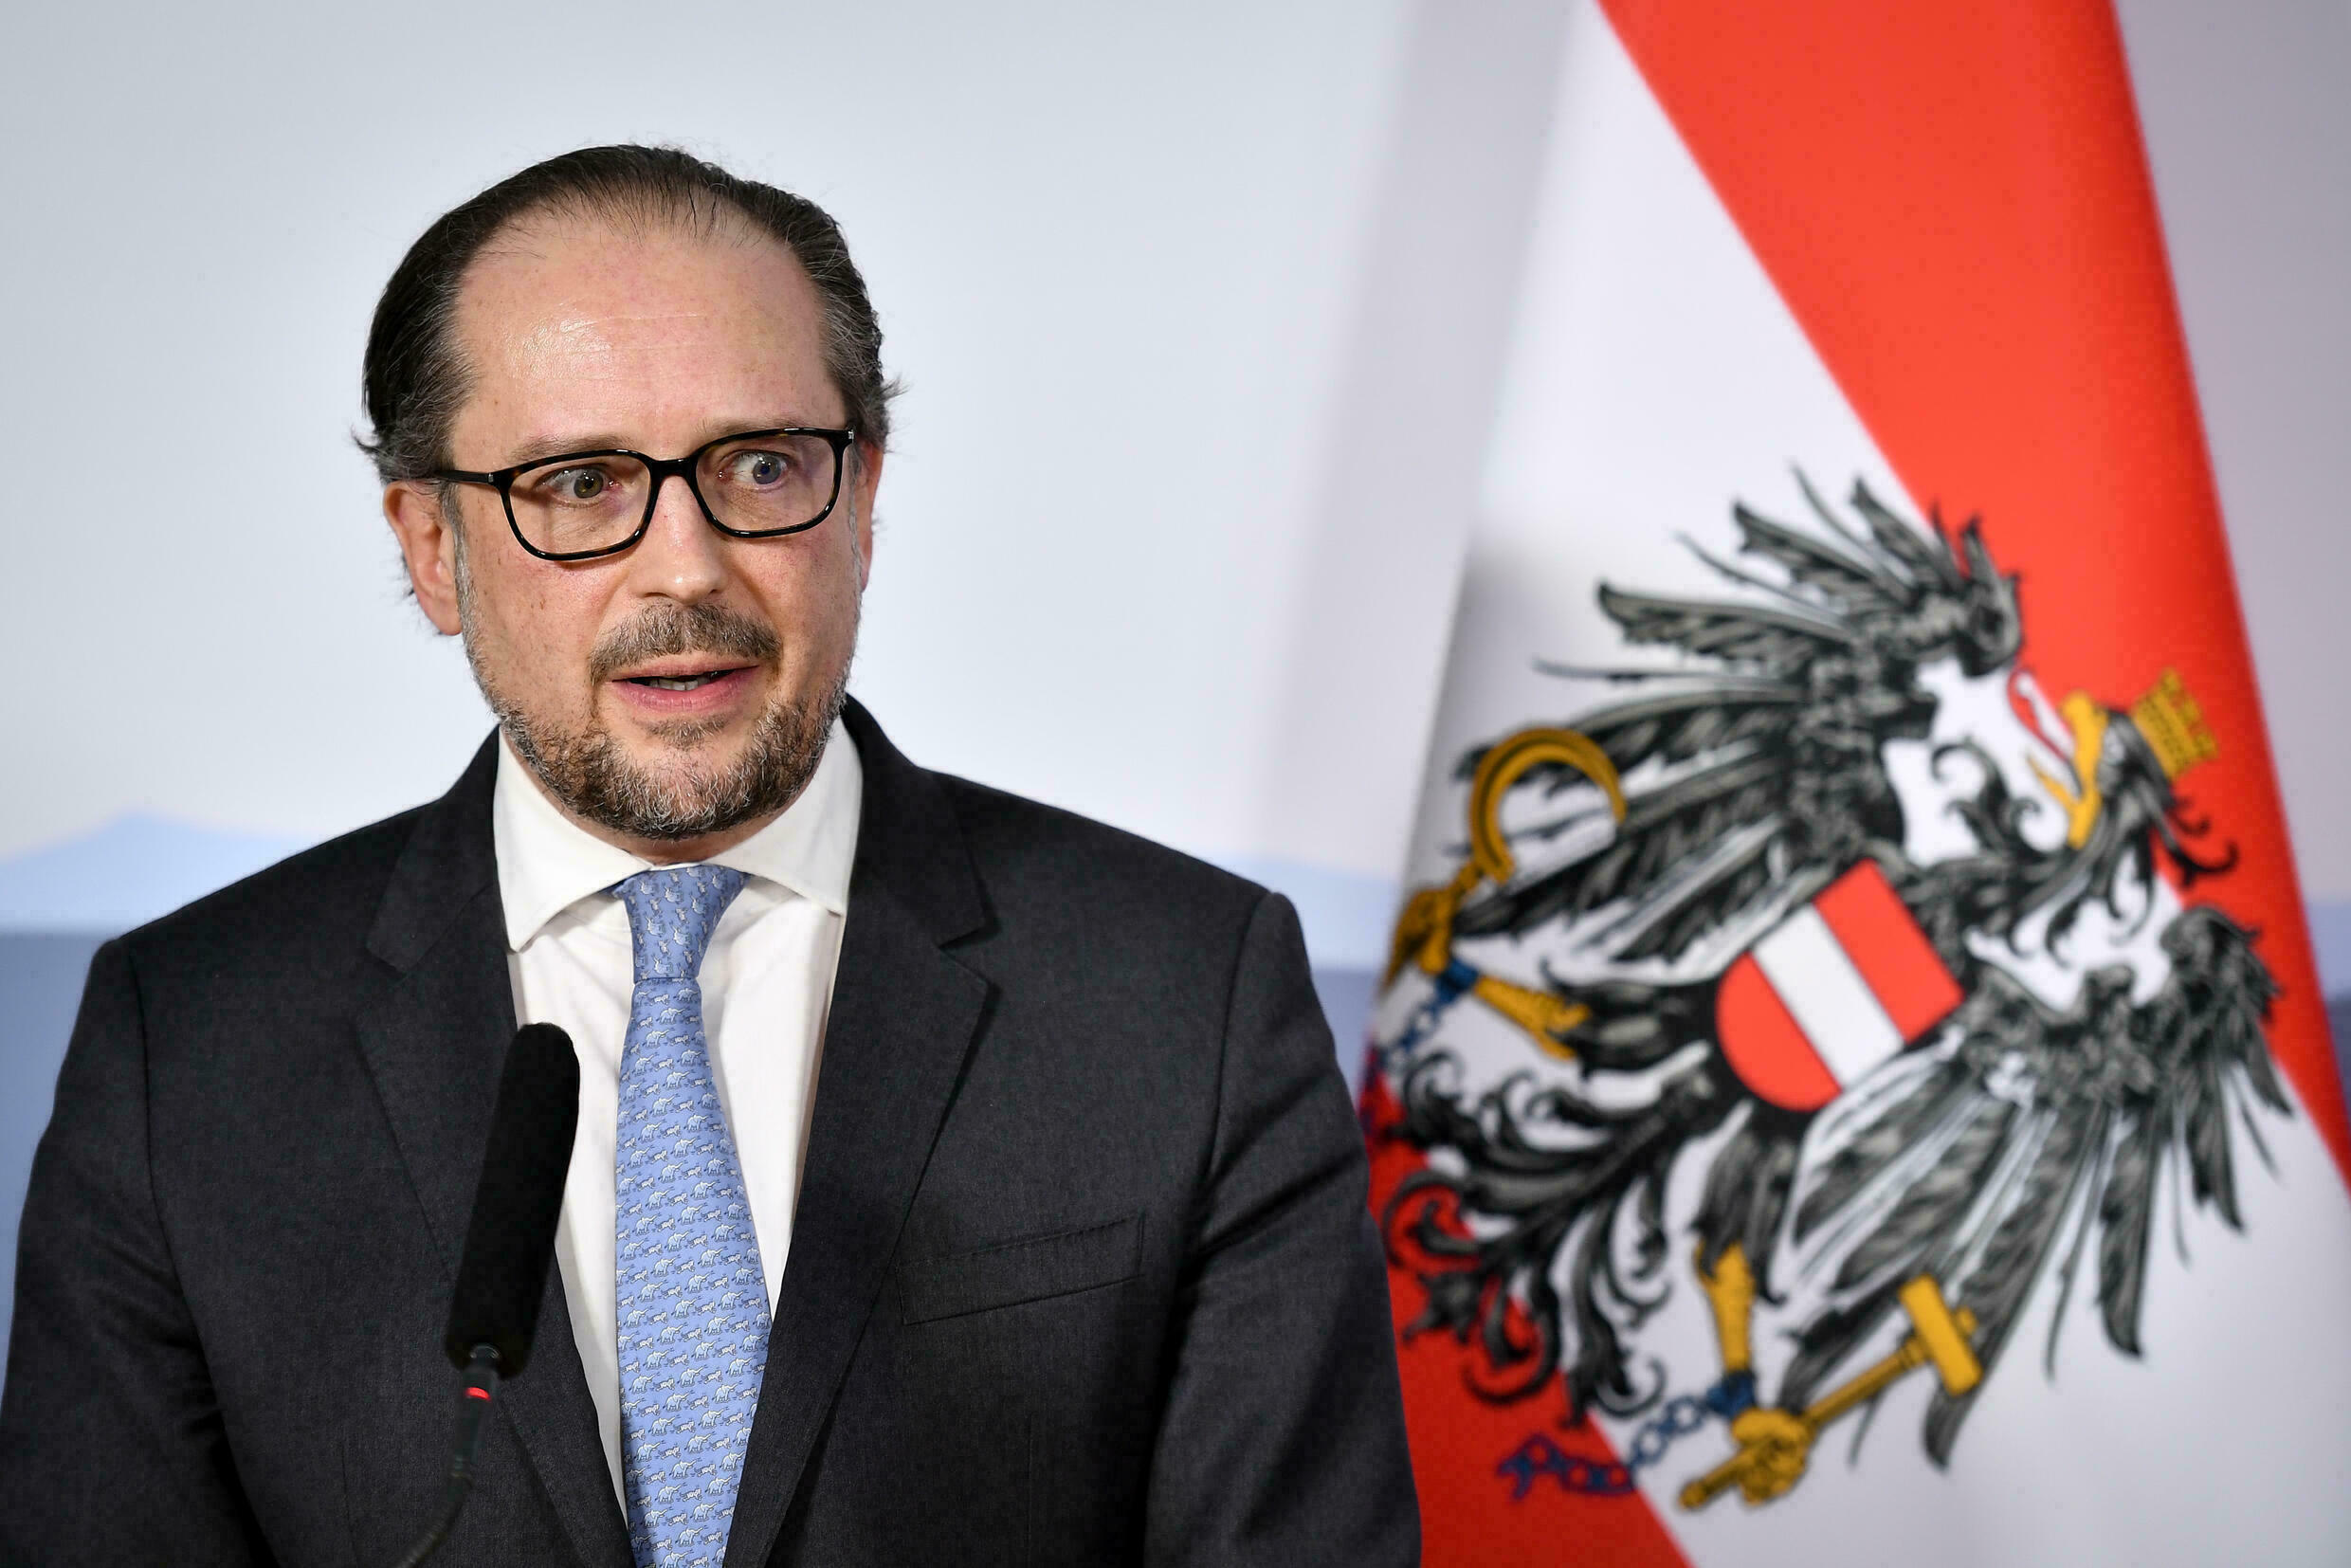 Terremoto politico in Austria:  il cancelliere  Schallenberg ha annunciato le dimissioni